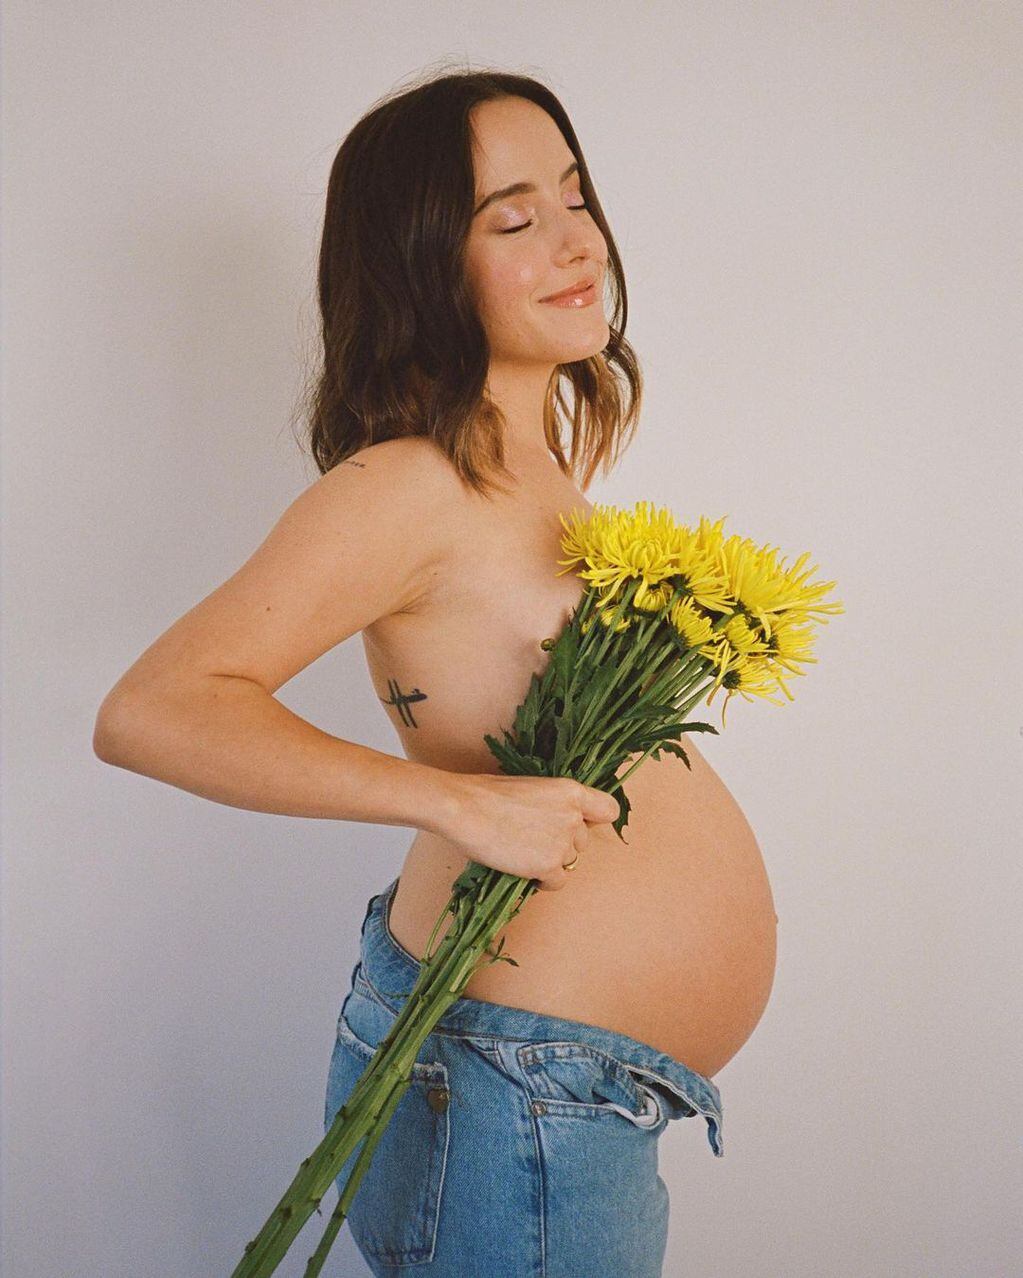 Evaluna Montaner posó al natural para mostrar el avance de su embarazo.